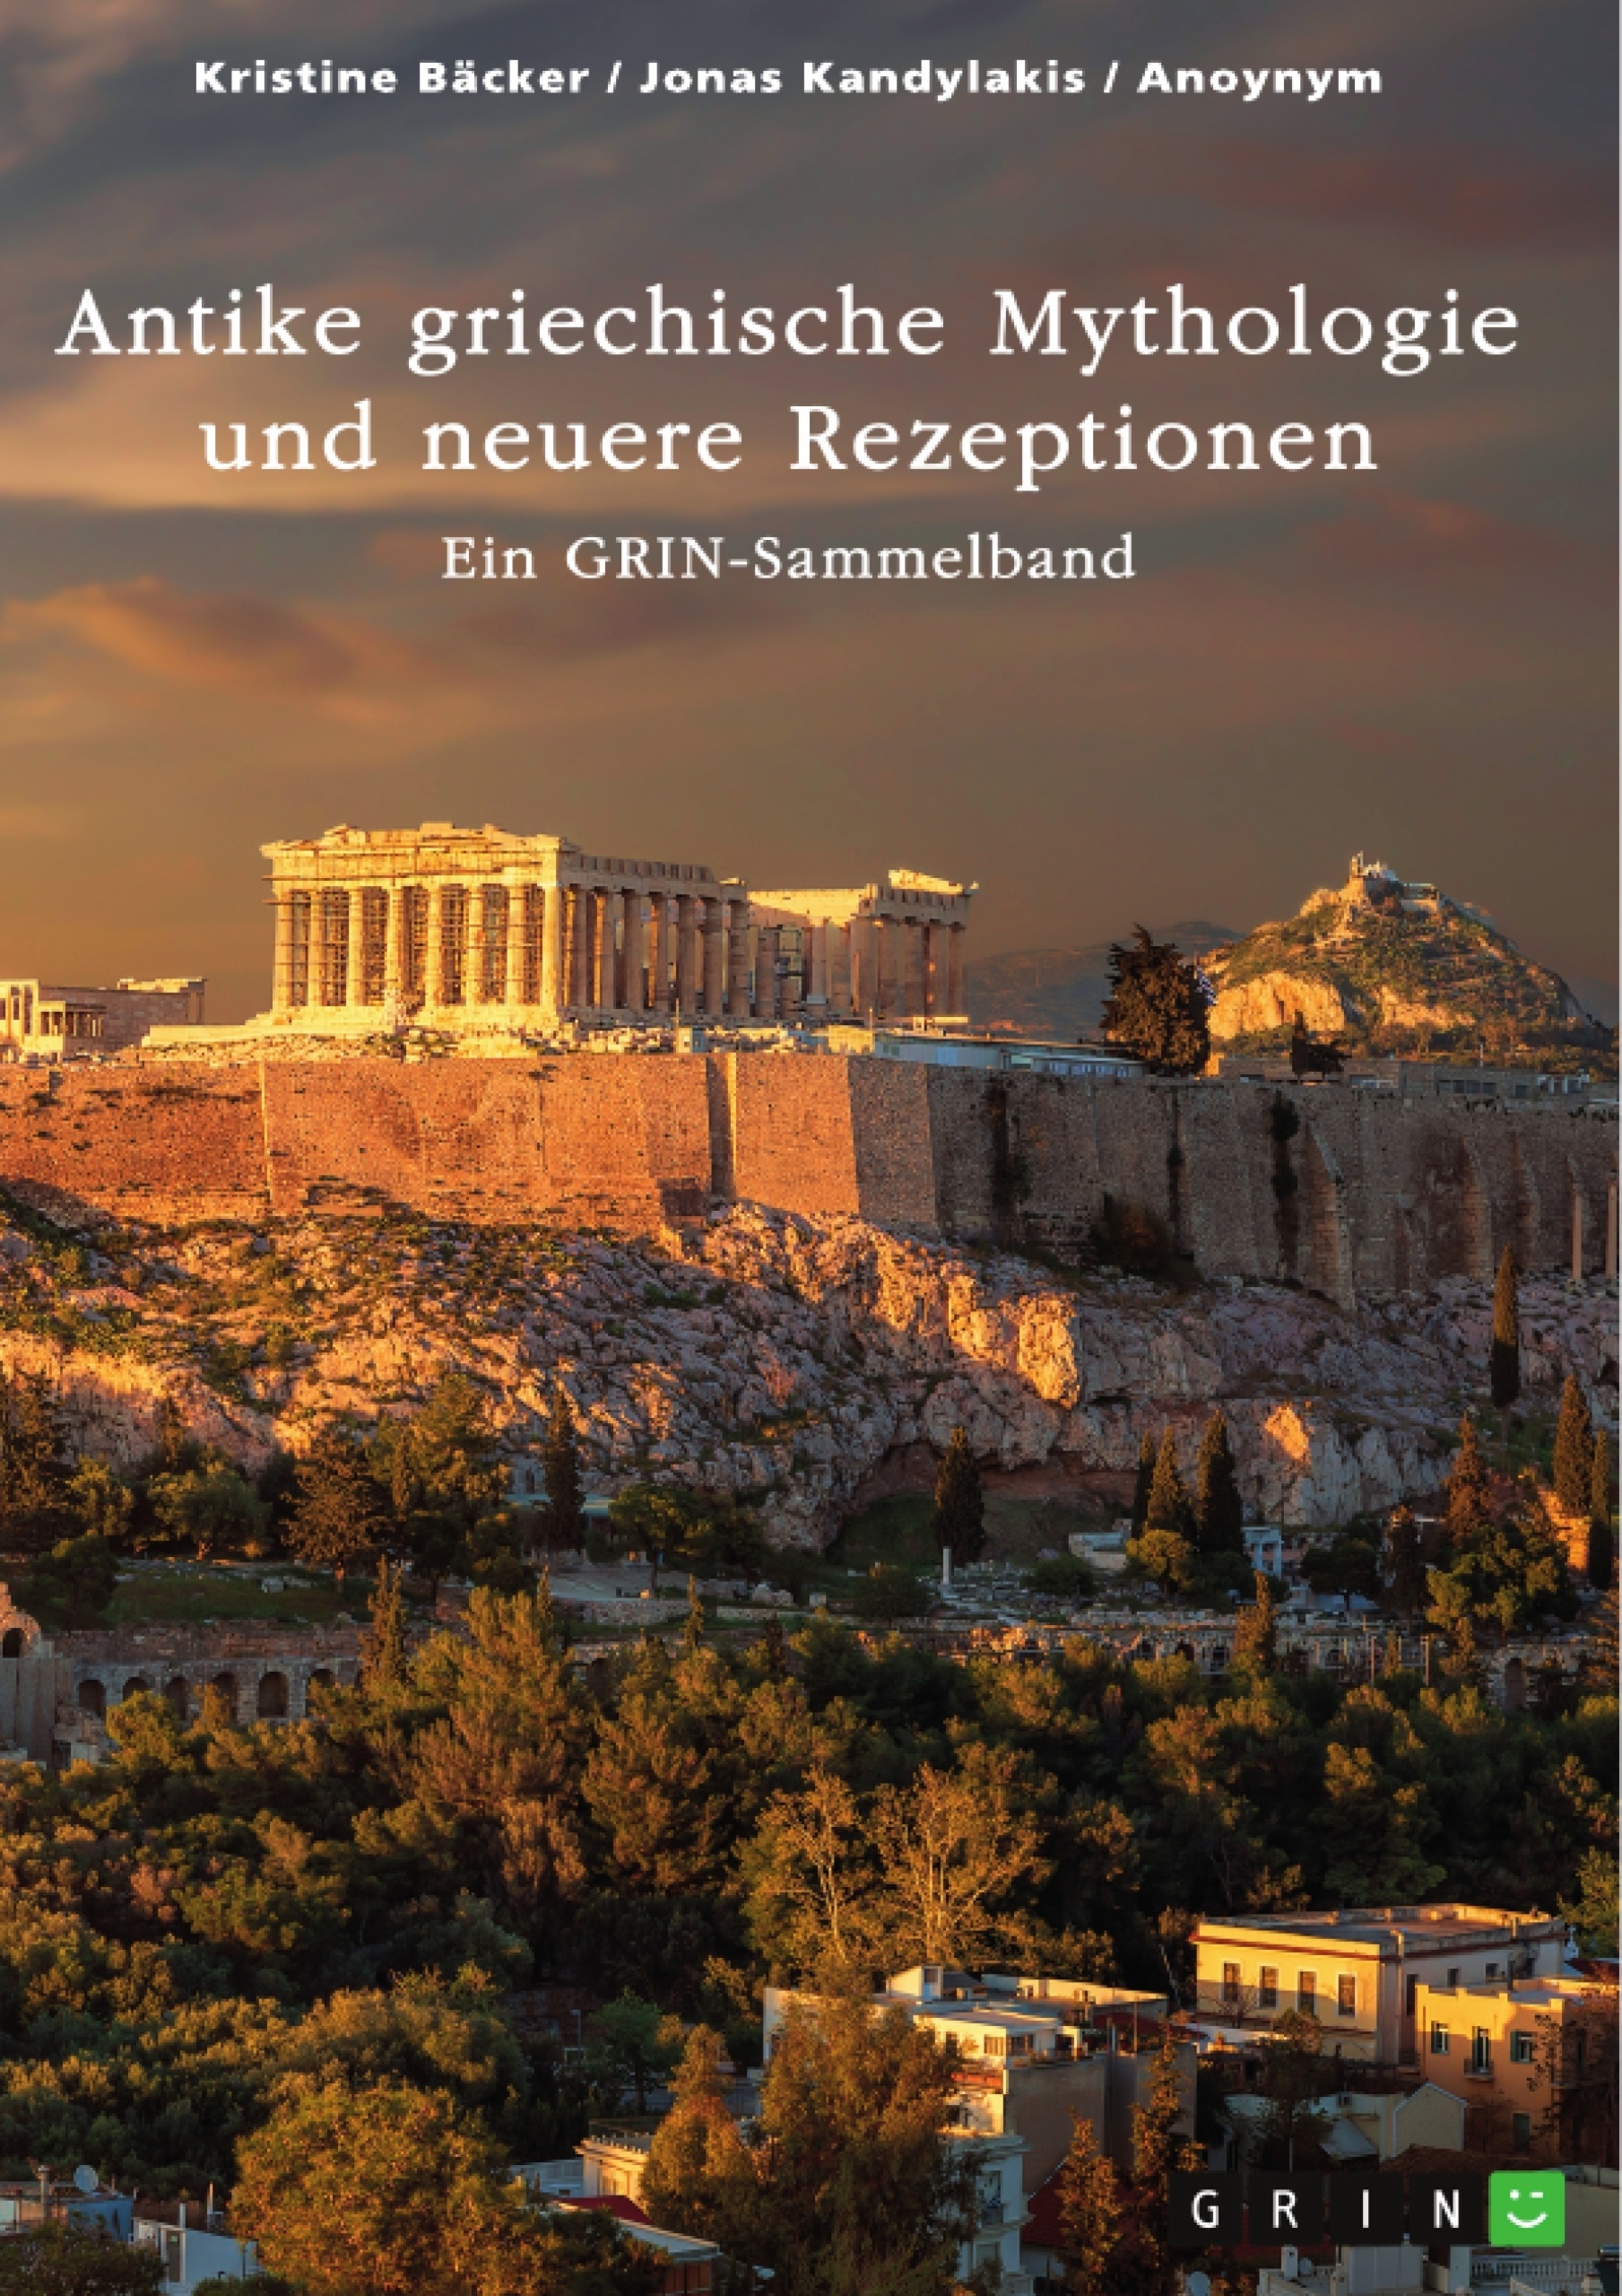 Title: Antike griechische Mythologie und neuere Rezeptionen